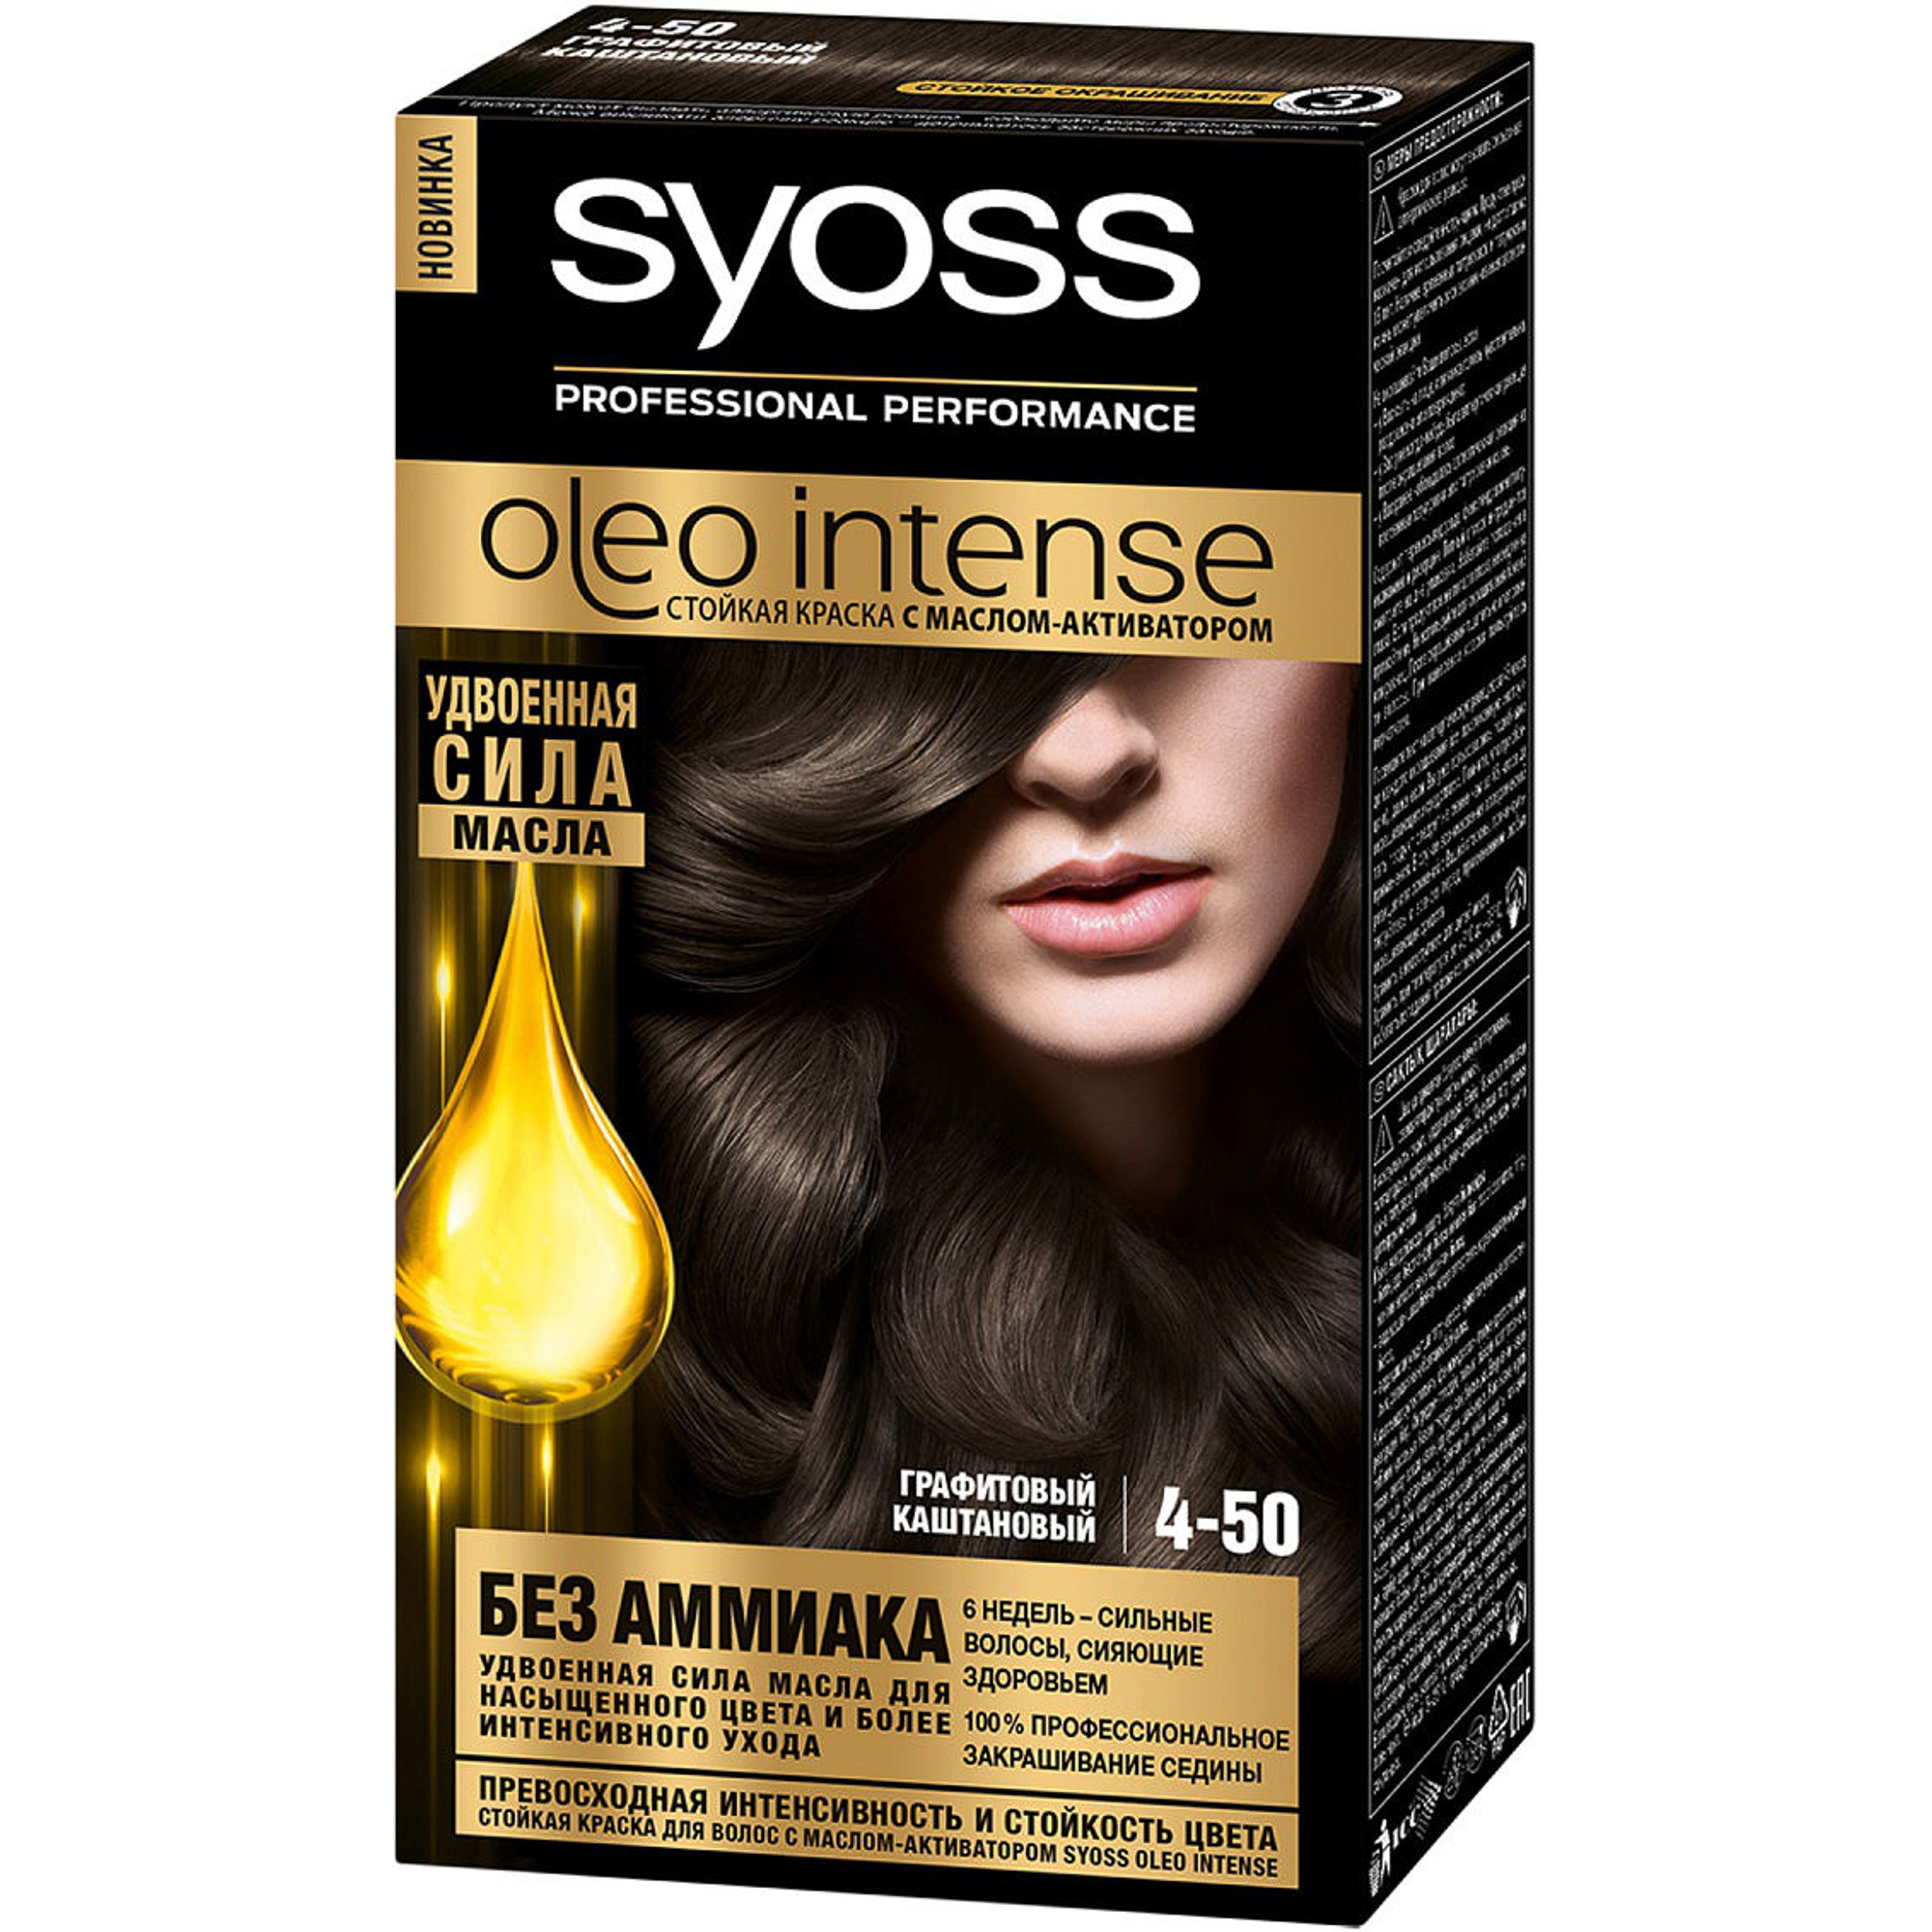 Краска для волос Syoss Oleo Intense 4-50 Графитовый каштановый краска для волос syoss oleo intense 4 18 шоколадный каштановый